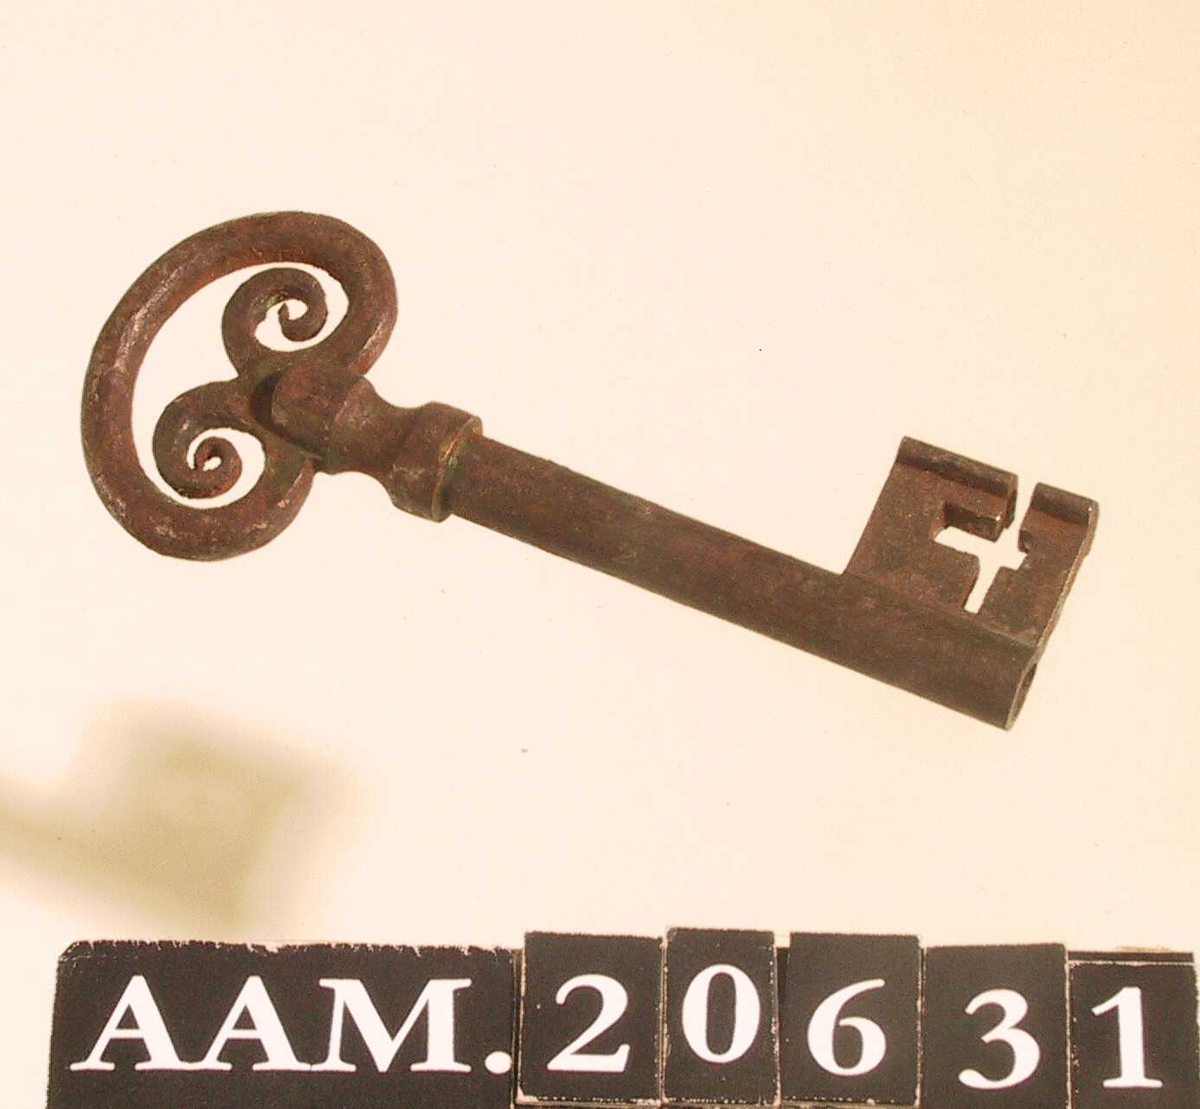 Nøkkel fra Åmli gamle kirke. Jern.